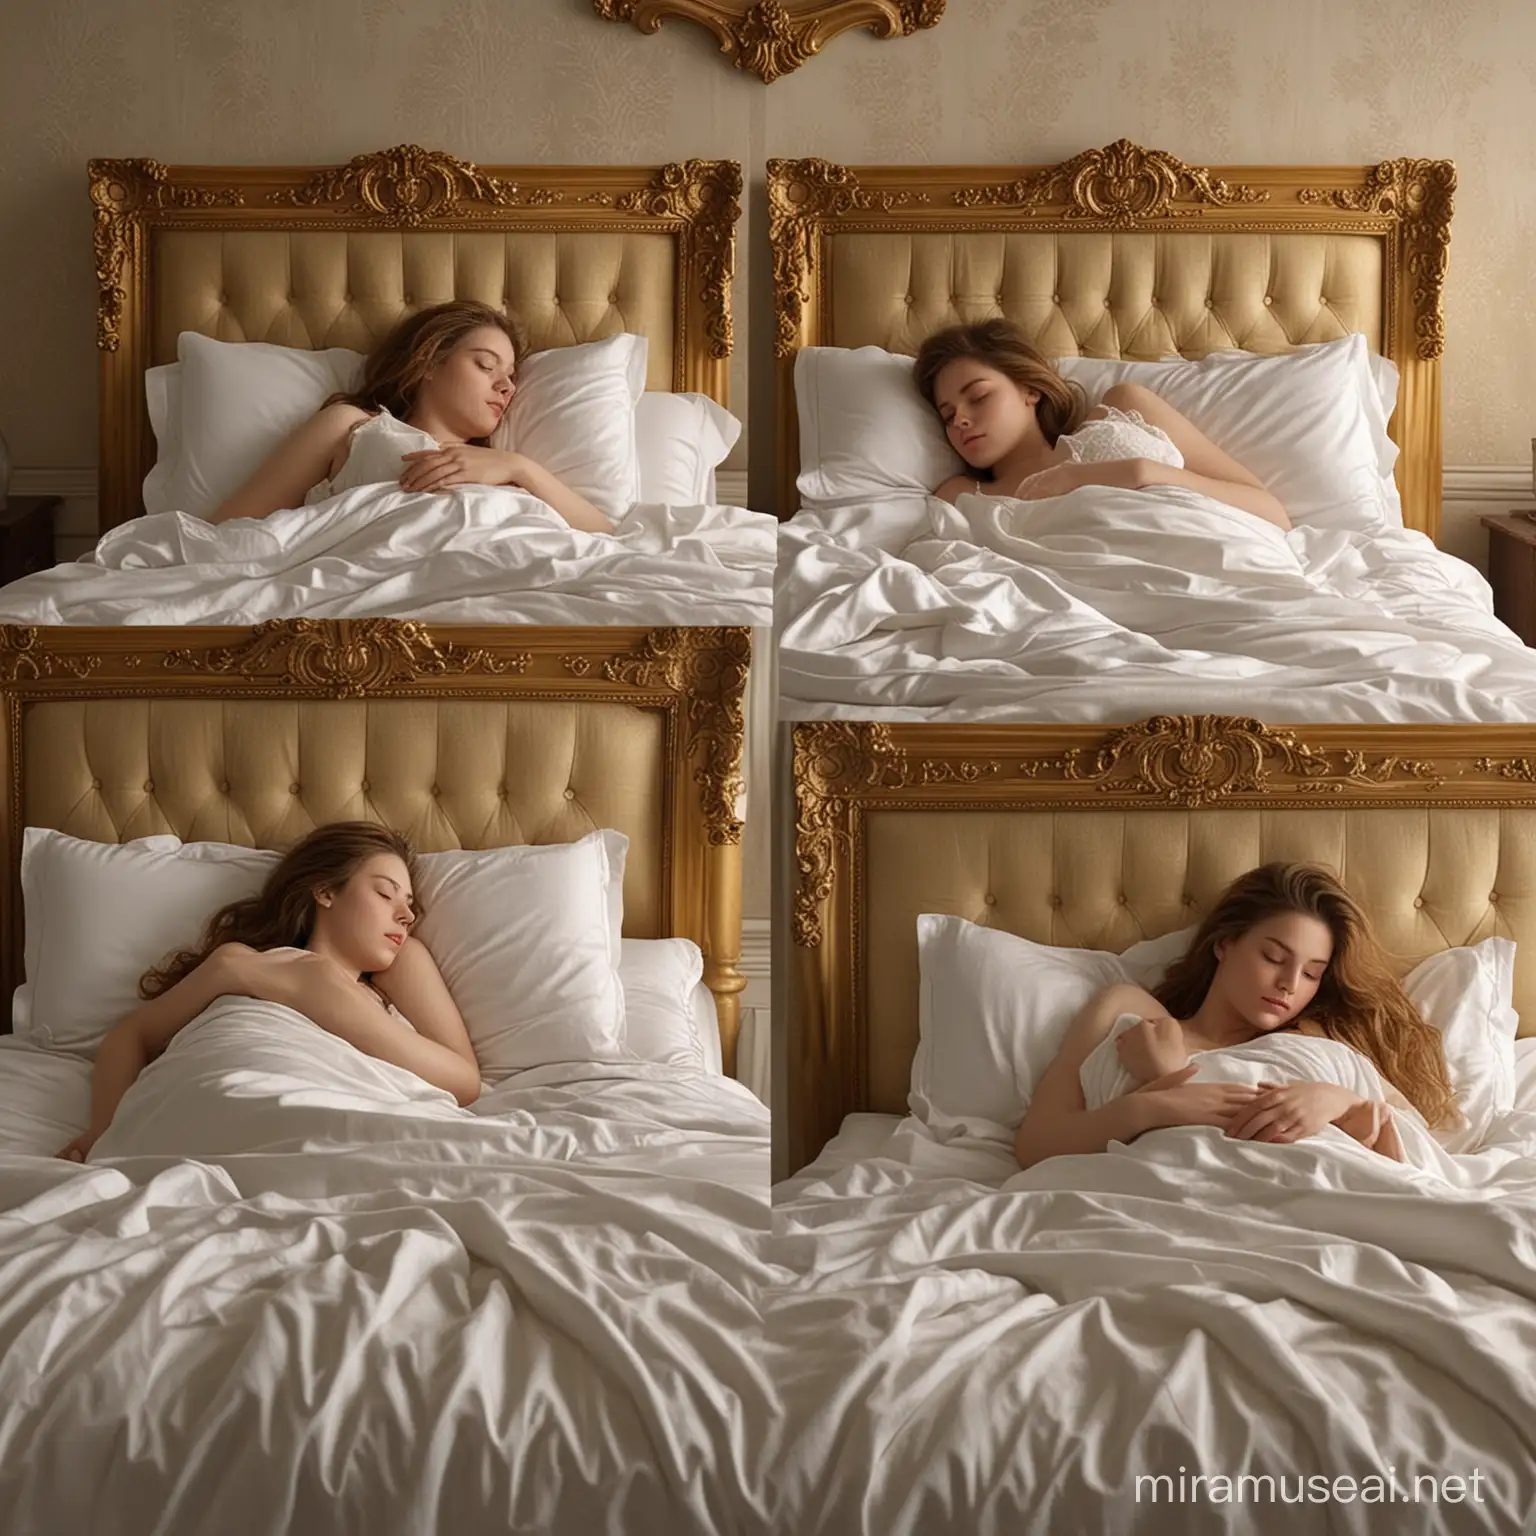 FivePanel Golden Framed Portraits of Sleeping Girl in Luxurious Bedroom